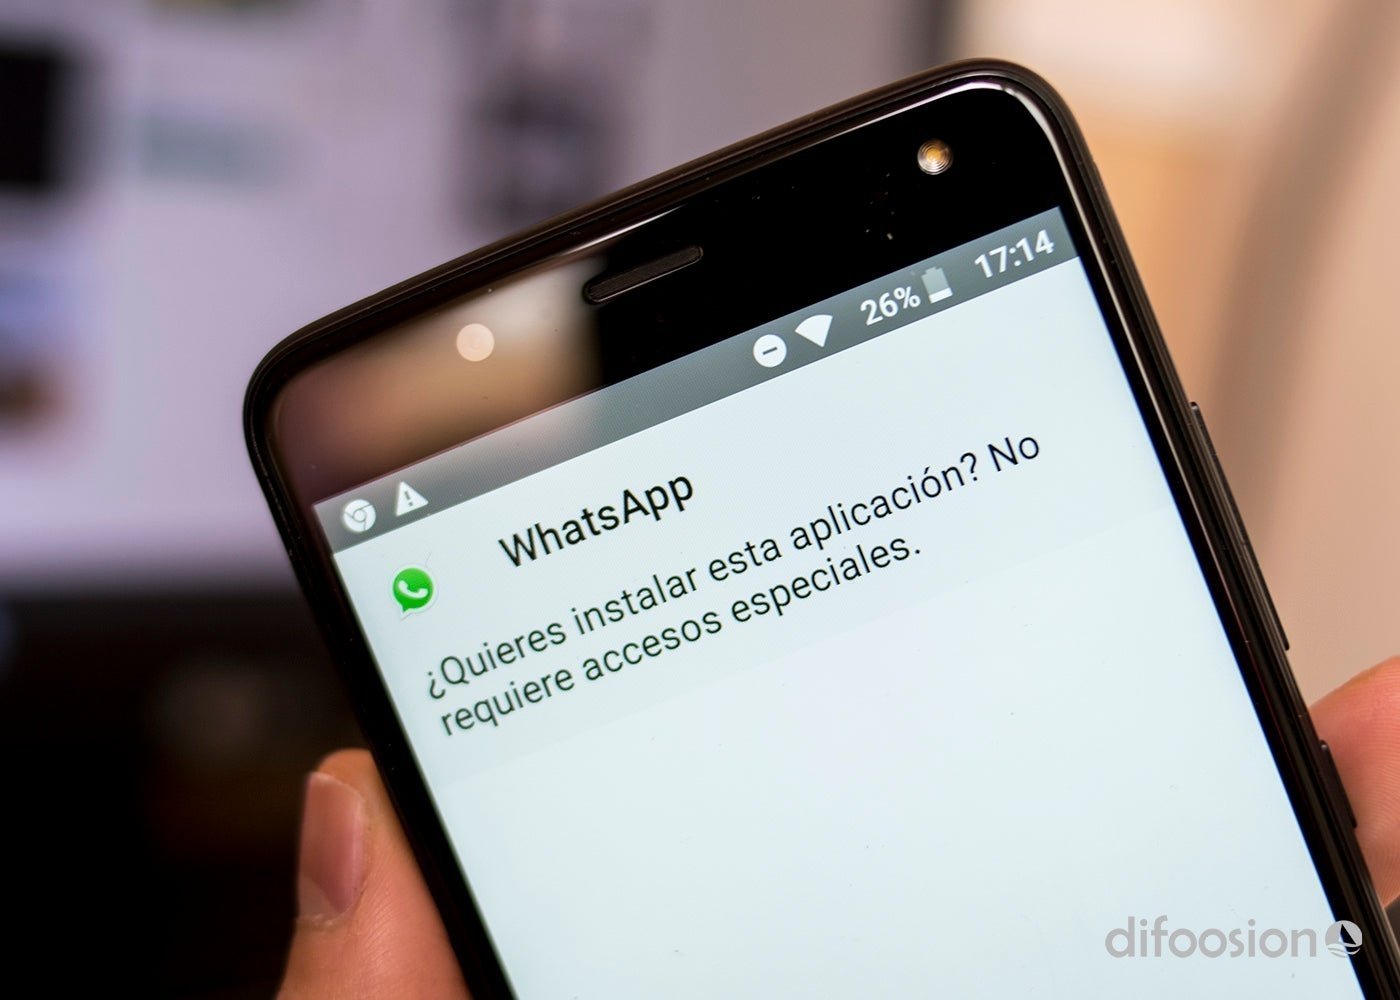 Envío predictivo, lo nuevo de WhatsApp para que envíes fotos todavía más rápido